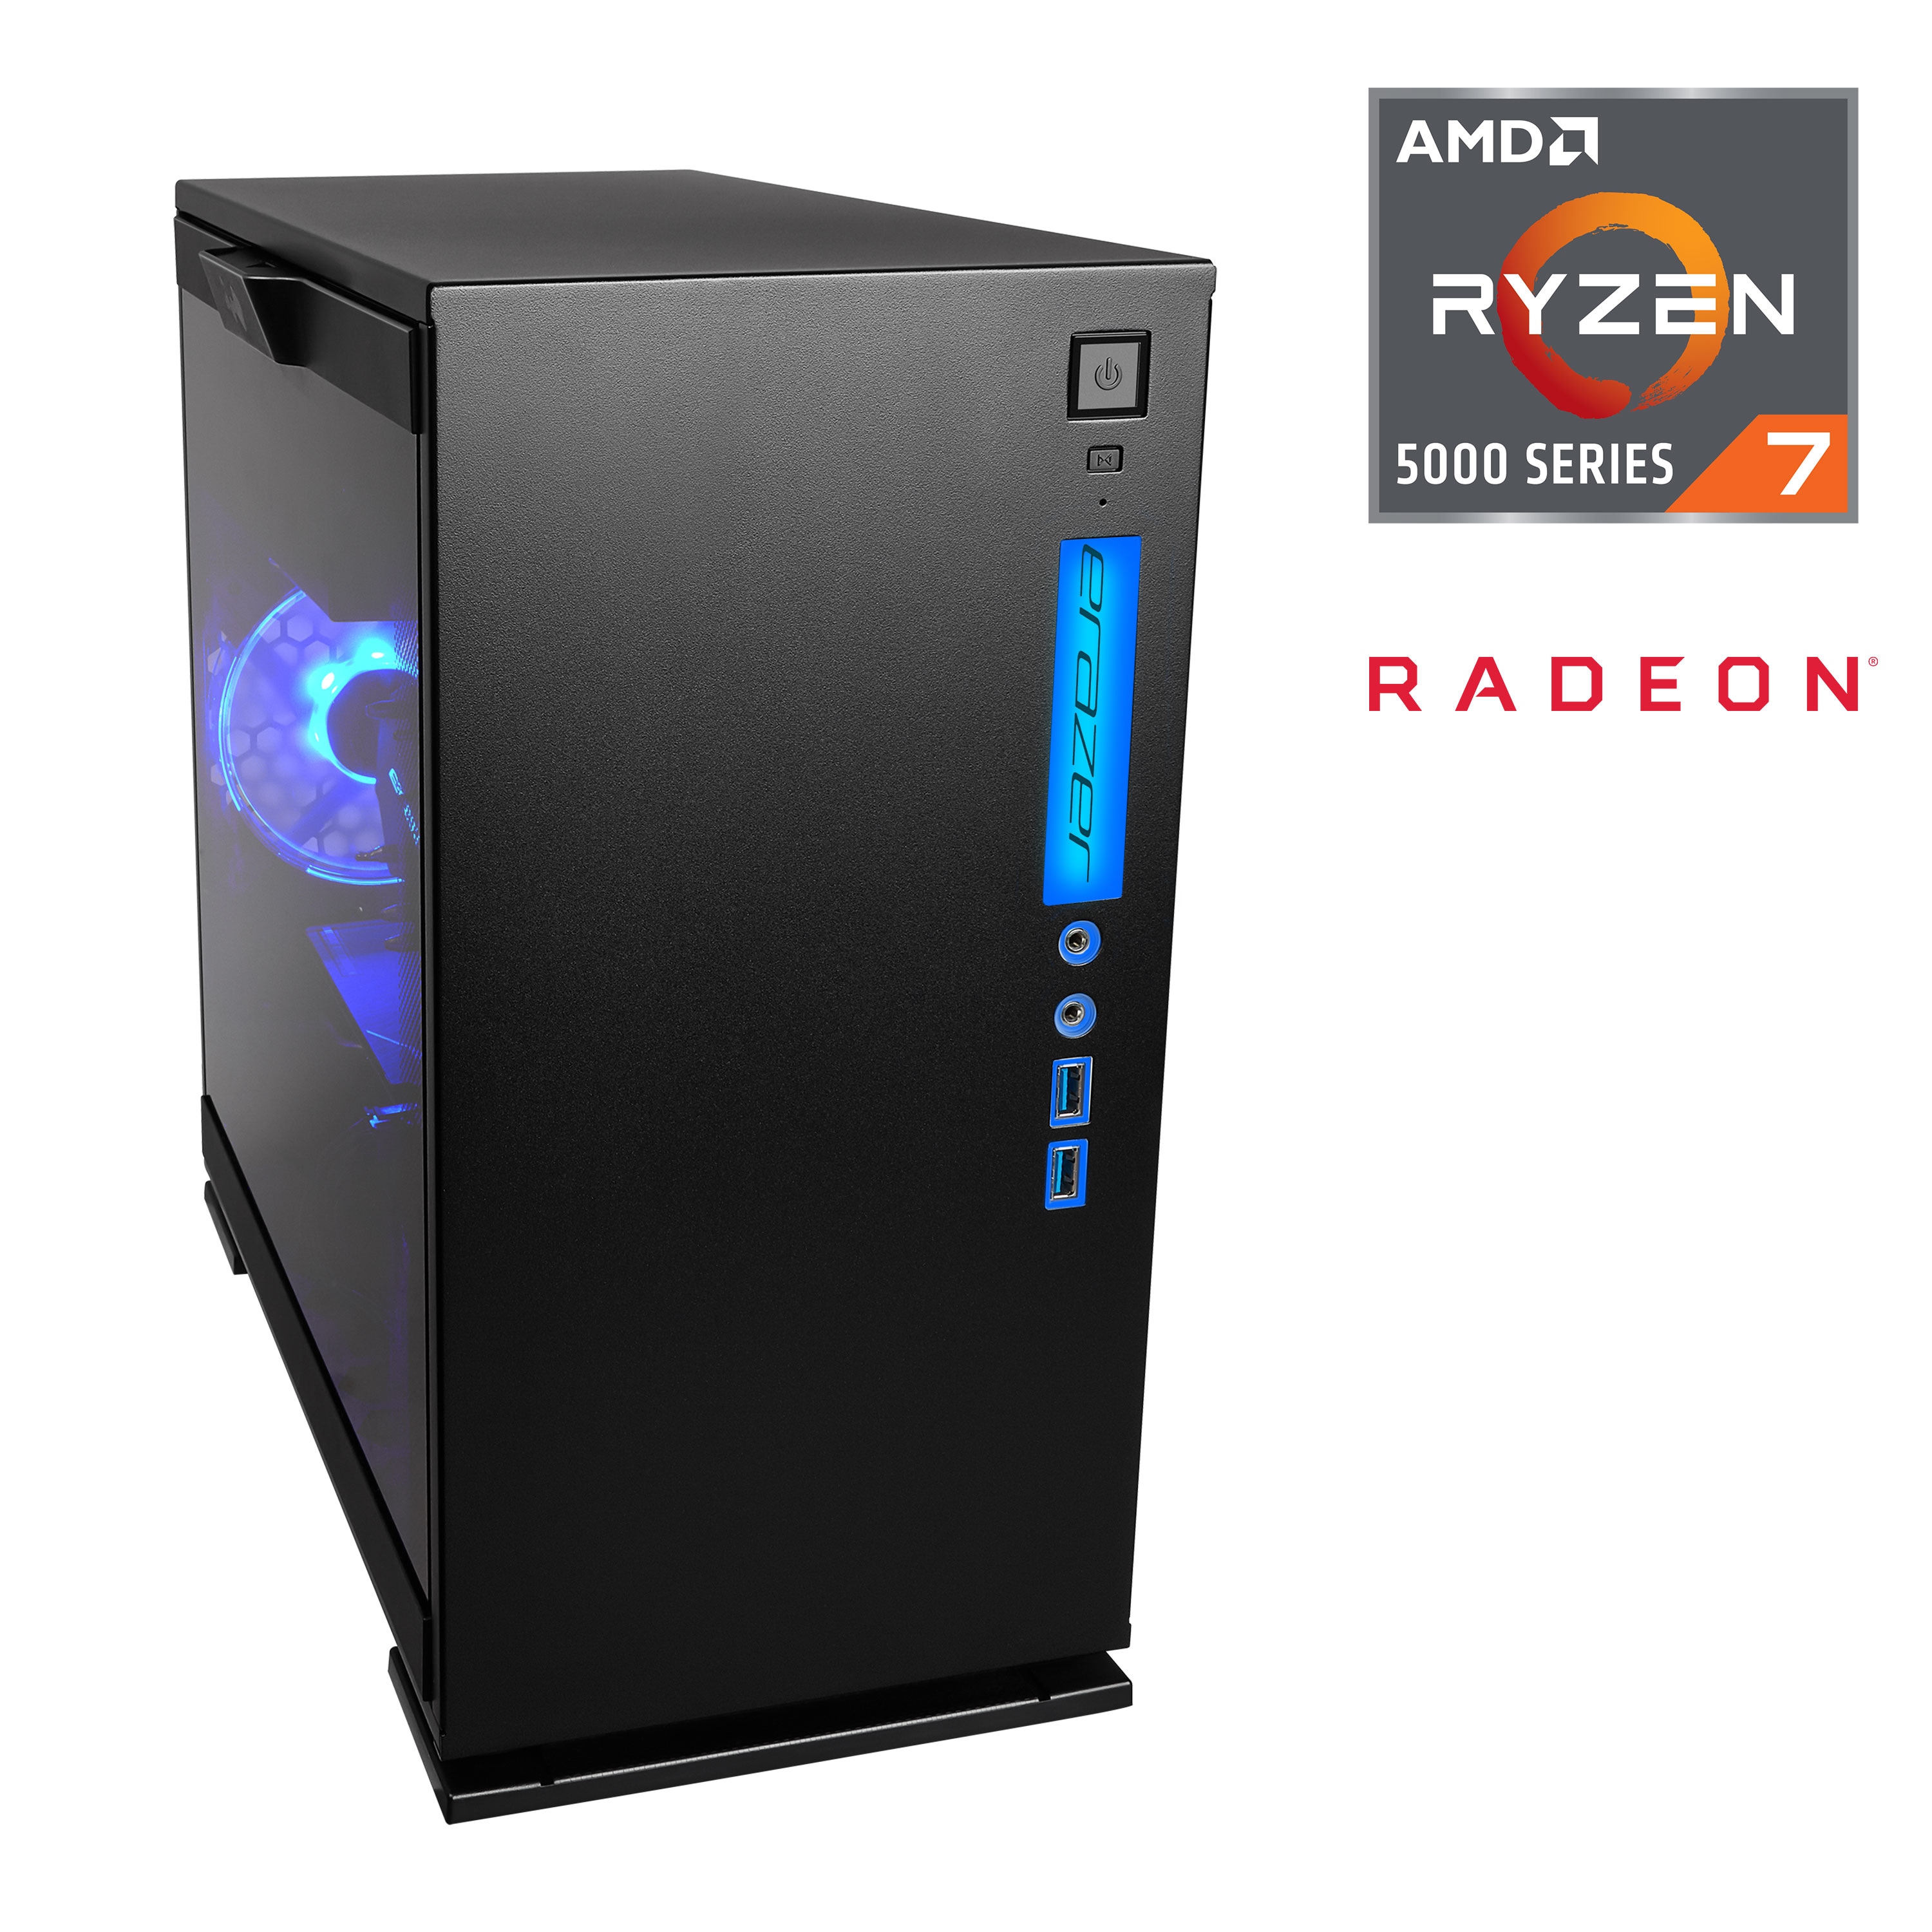 MEDION® ERAZER® Engineer P15, AMD Ryzen™ 7 5800X, Windows 10 Home, AMD Radeon™ RX 6700 XT, 1 TB SSD, 16 GB RAM, High-End Gaming PC